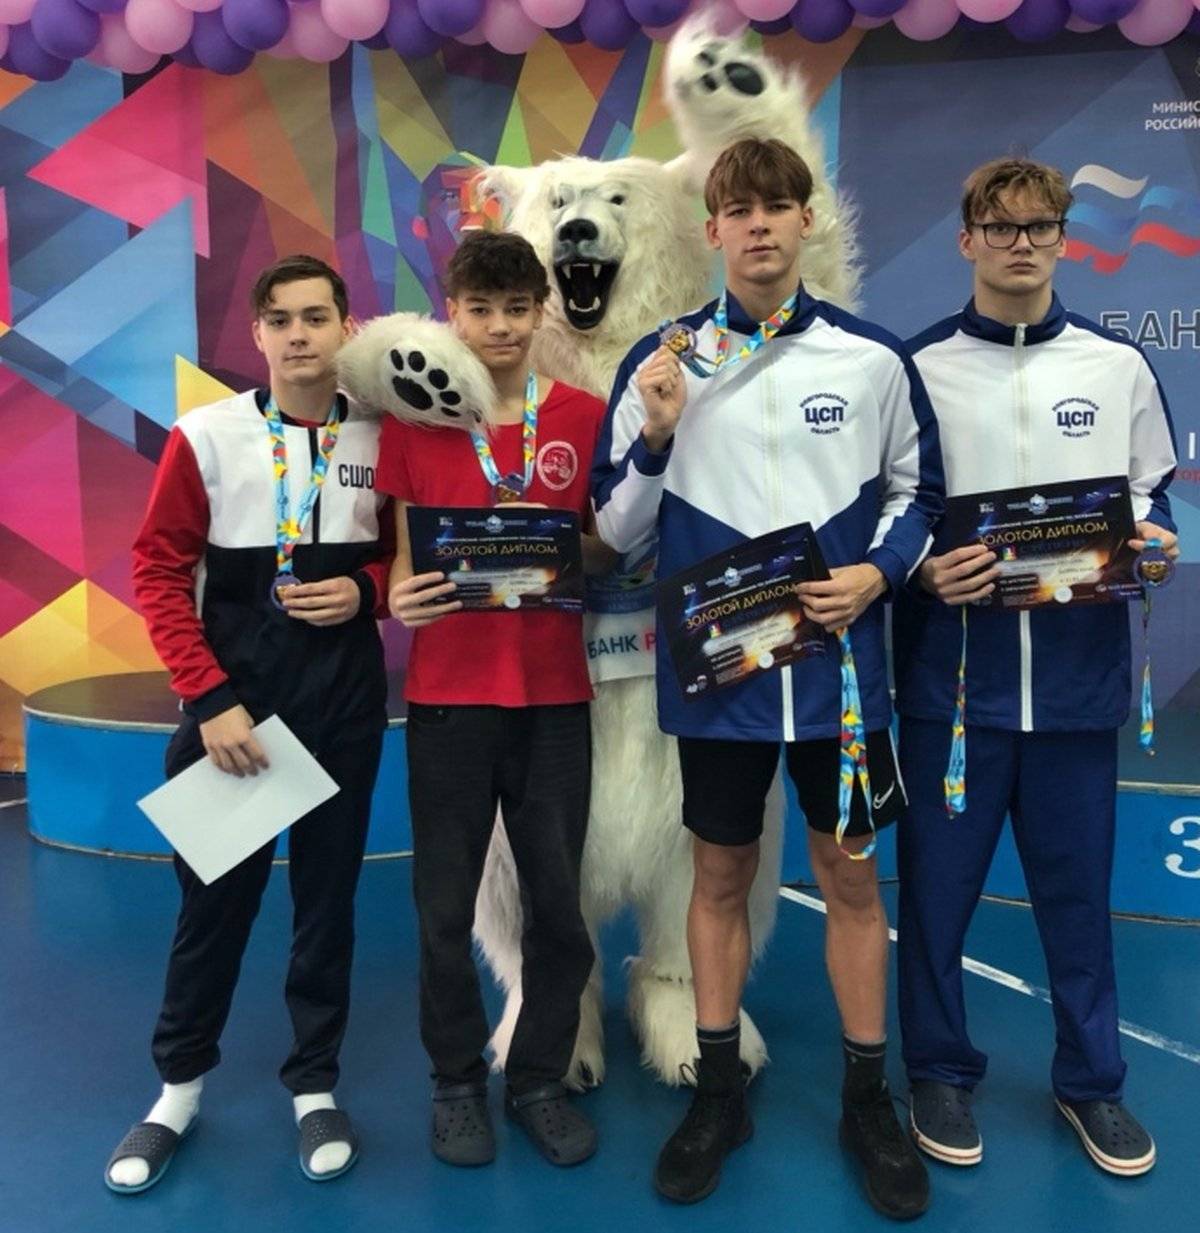 В соревнованиях участвовали воспитанники новгородской спортшколы олимпийского резерва №1, а также пловцы из Валдая и Боровичей.